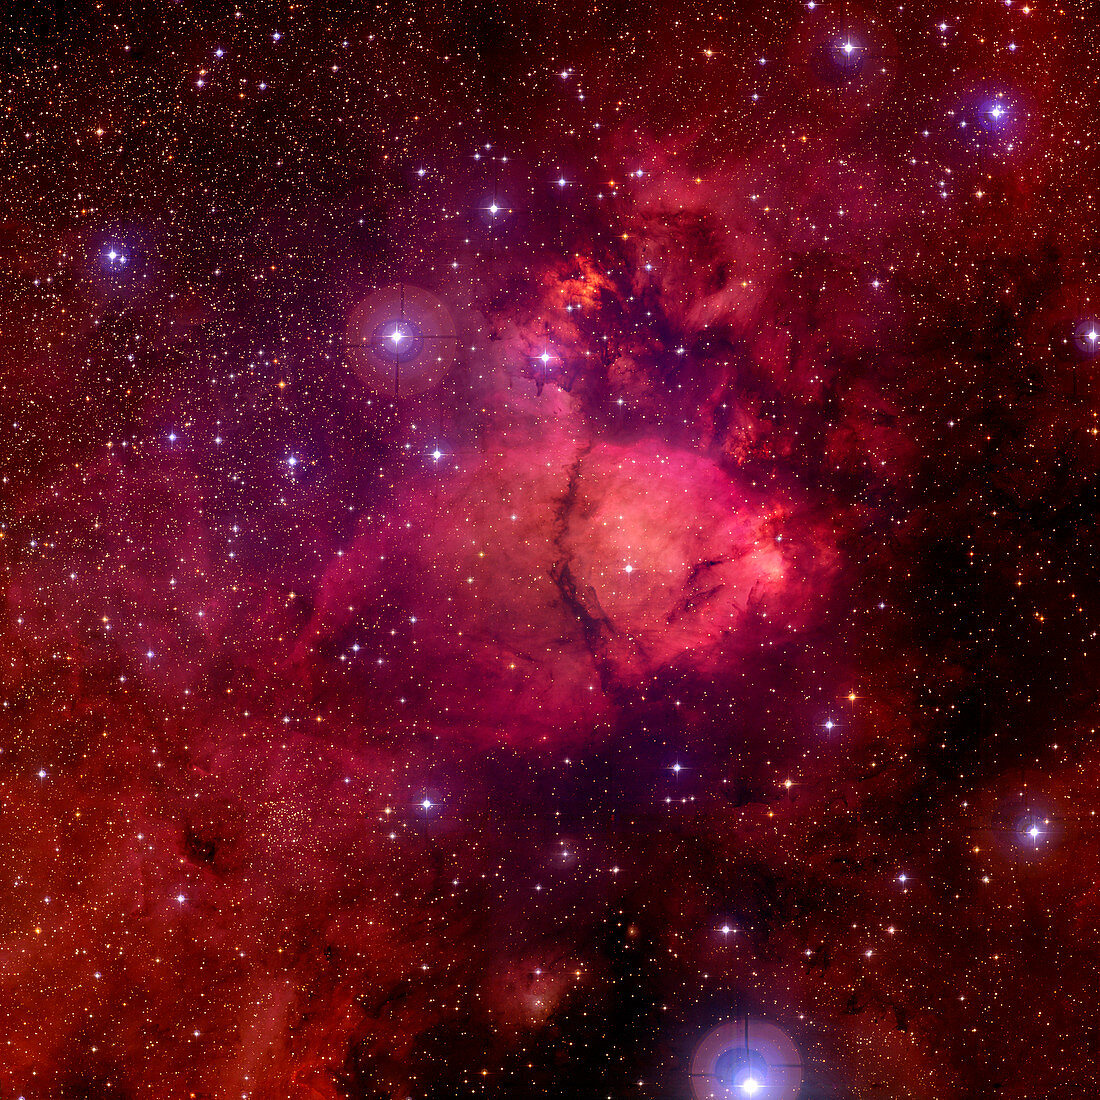 Emission nebula NGC 896,optical image